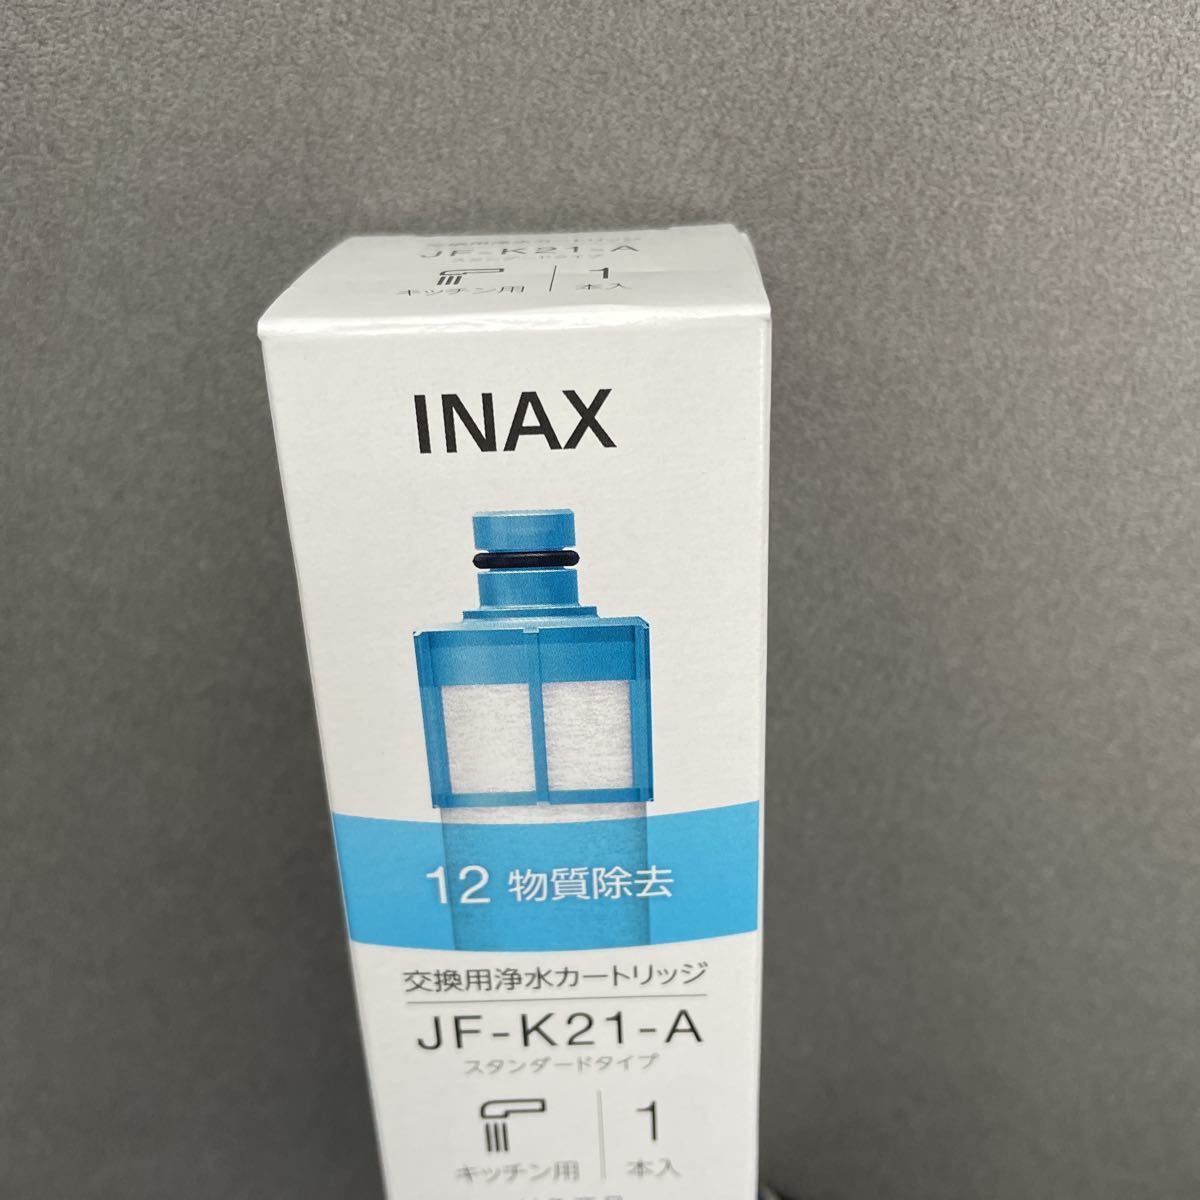 INAX для замены . вода картридж JF-K21-A JF K21 A